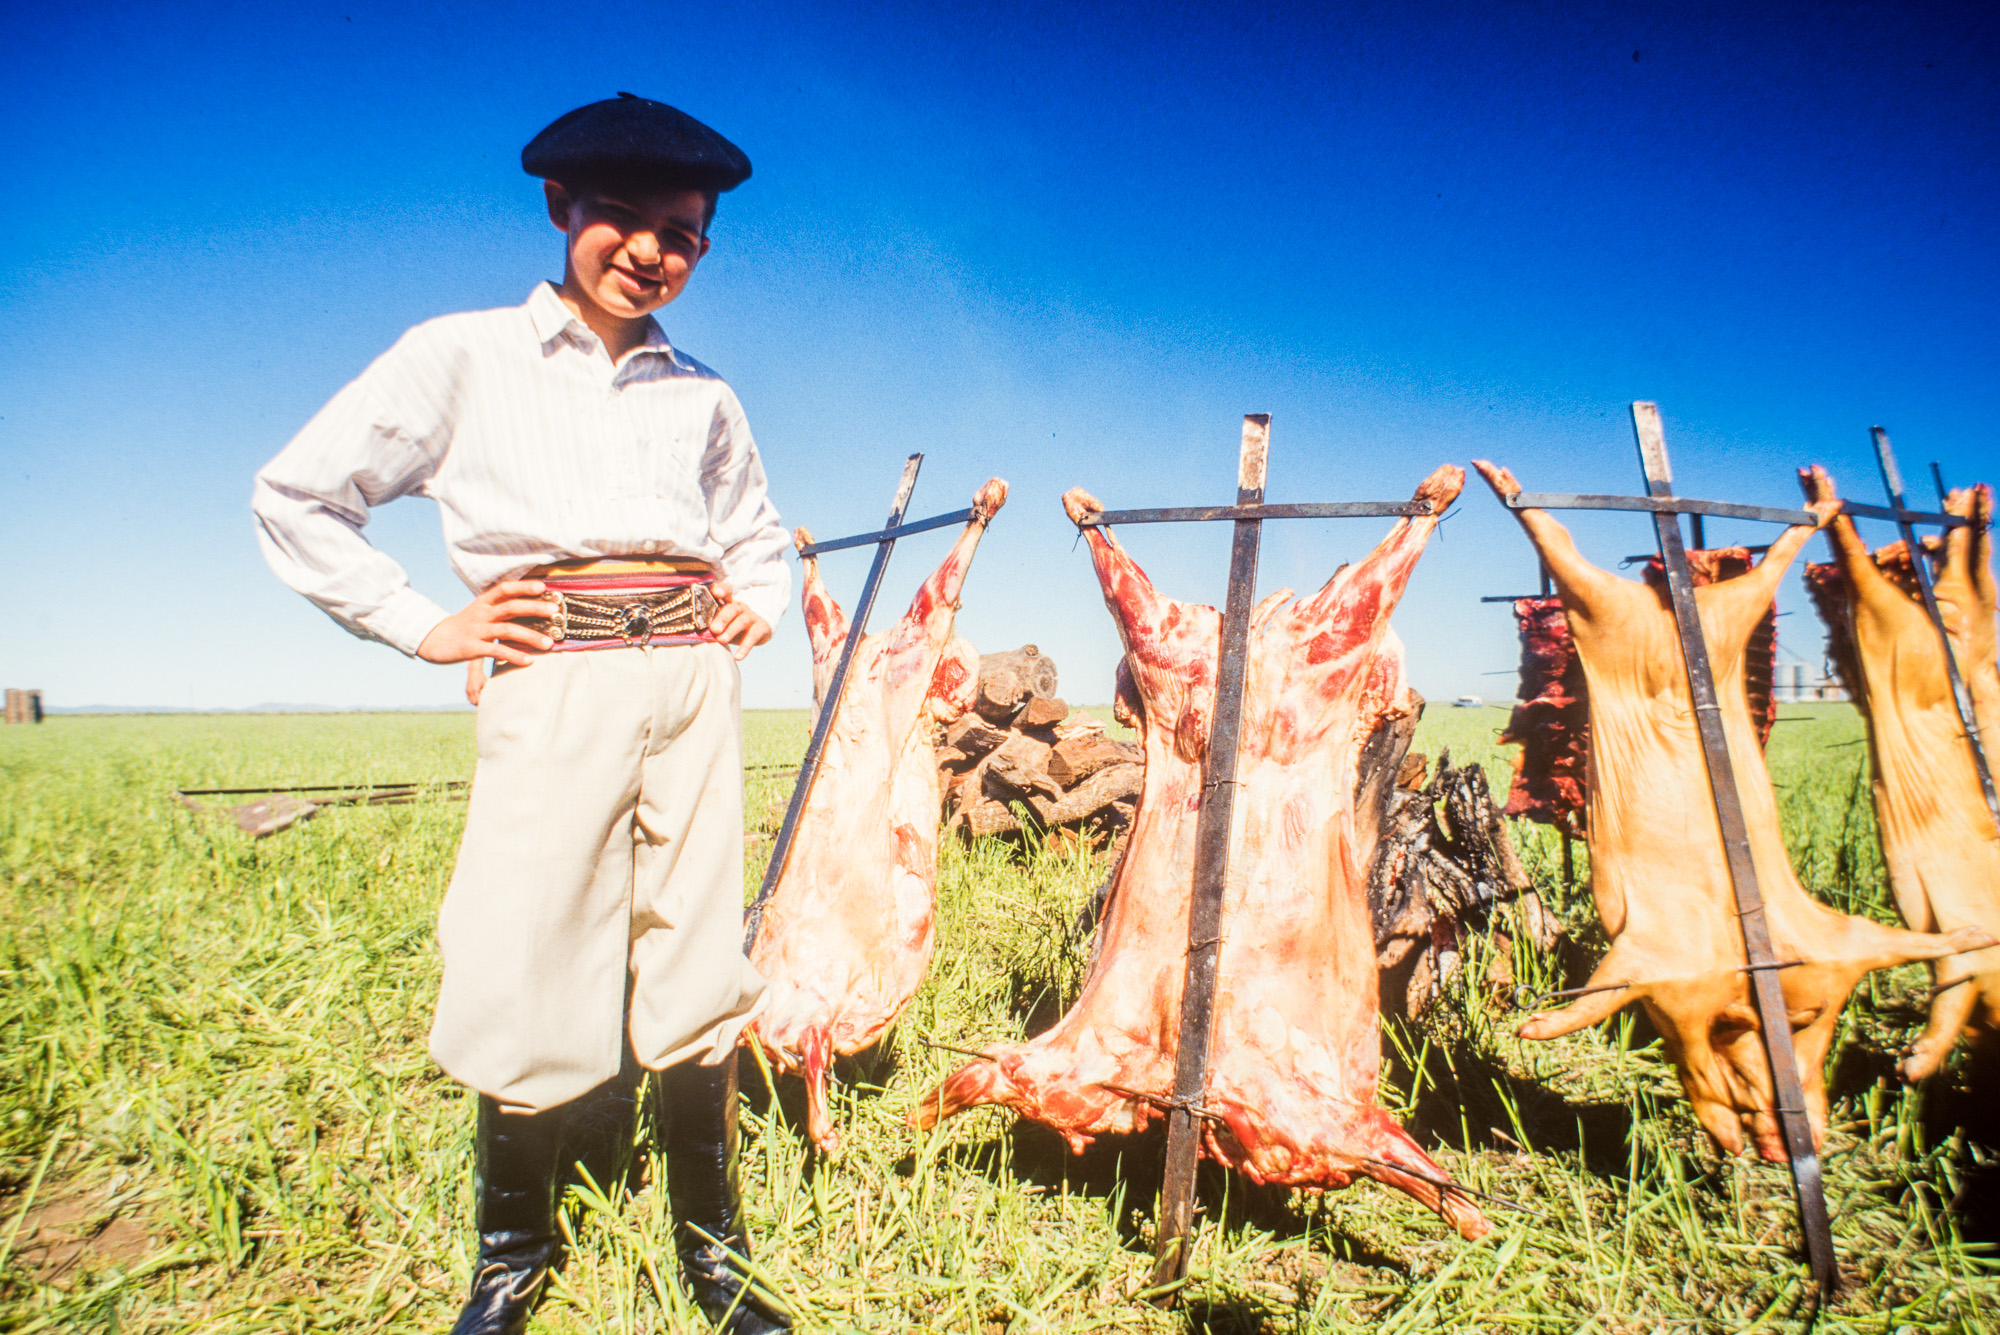 Français installés depuis un siècle et demi. Asado de mouton et porc cuit devant les flammes.